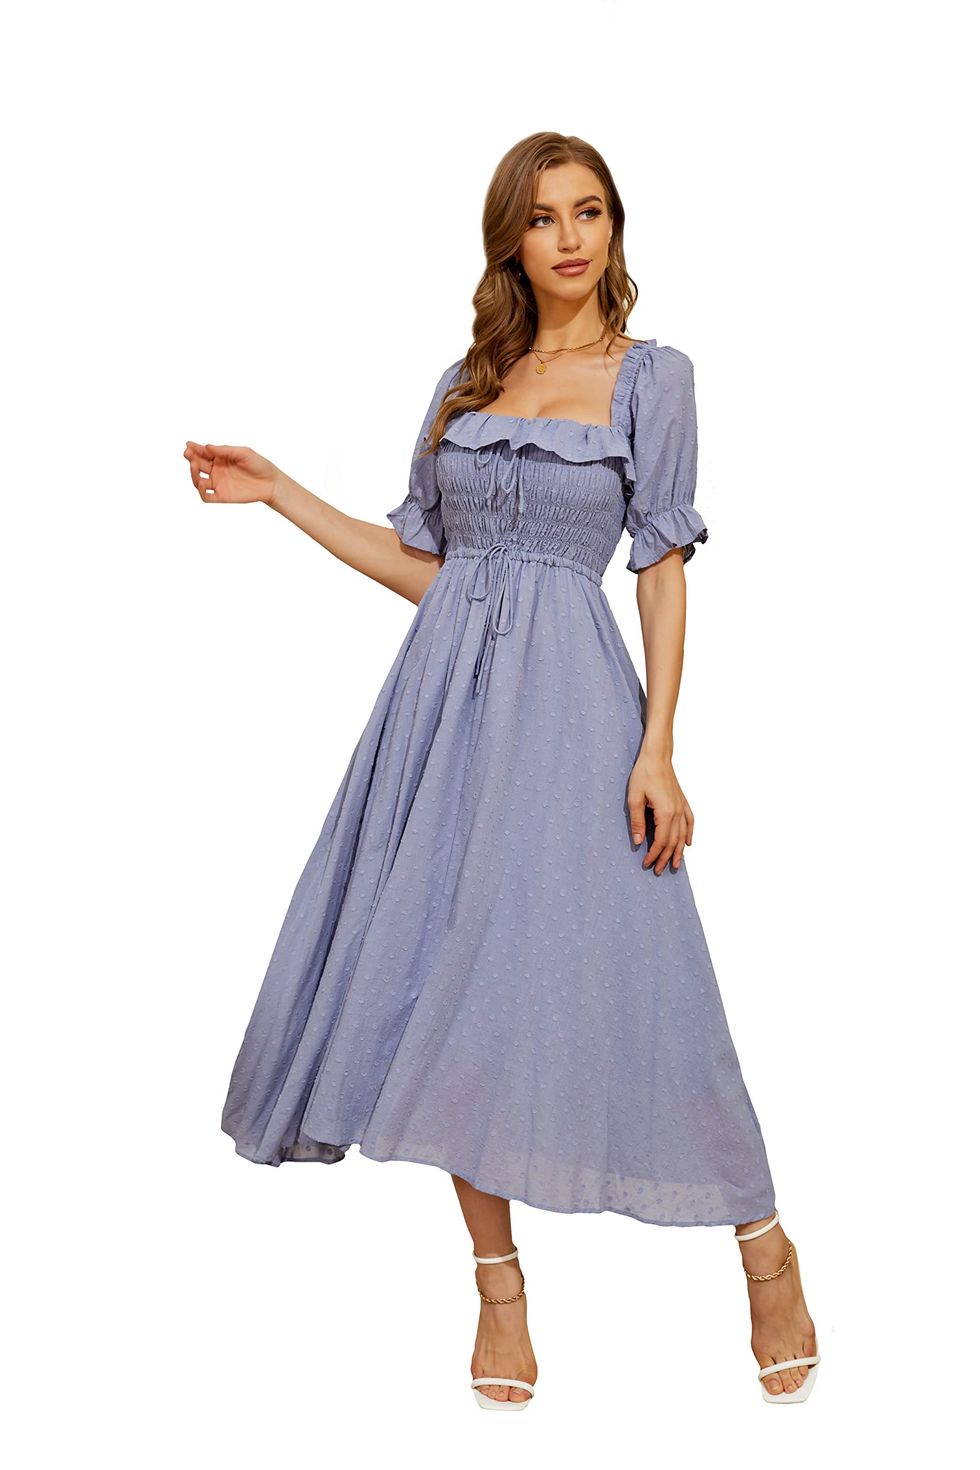  Floral Prairie Chic Vintage Dress Cotton Linen Short